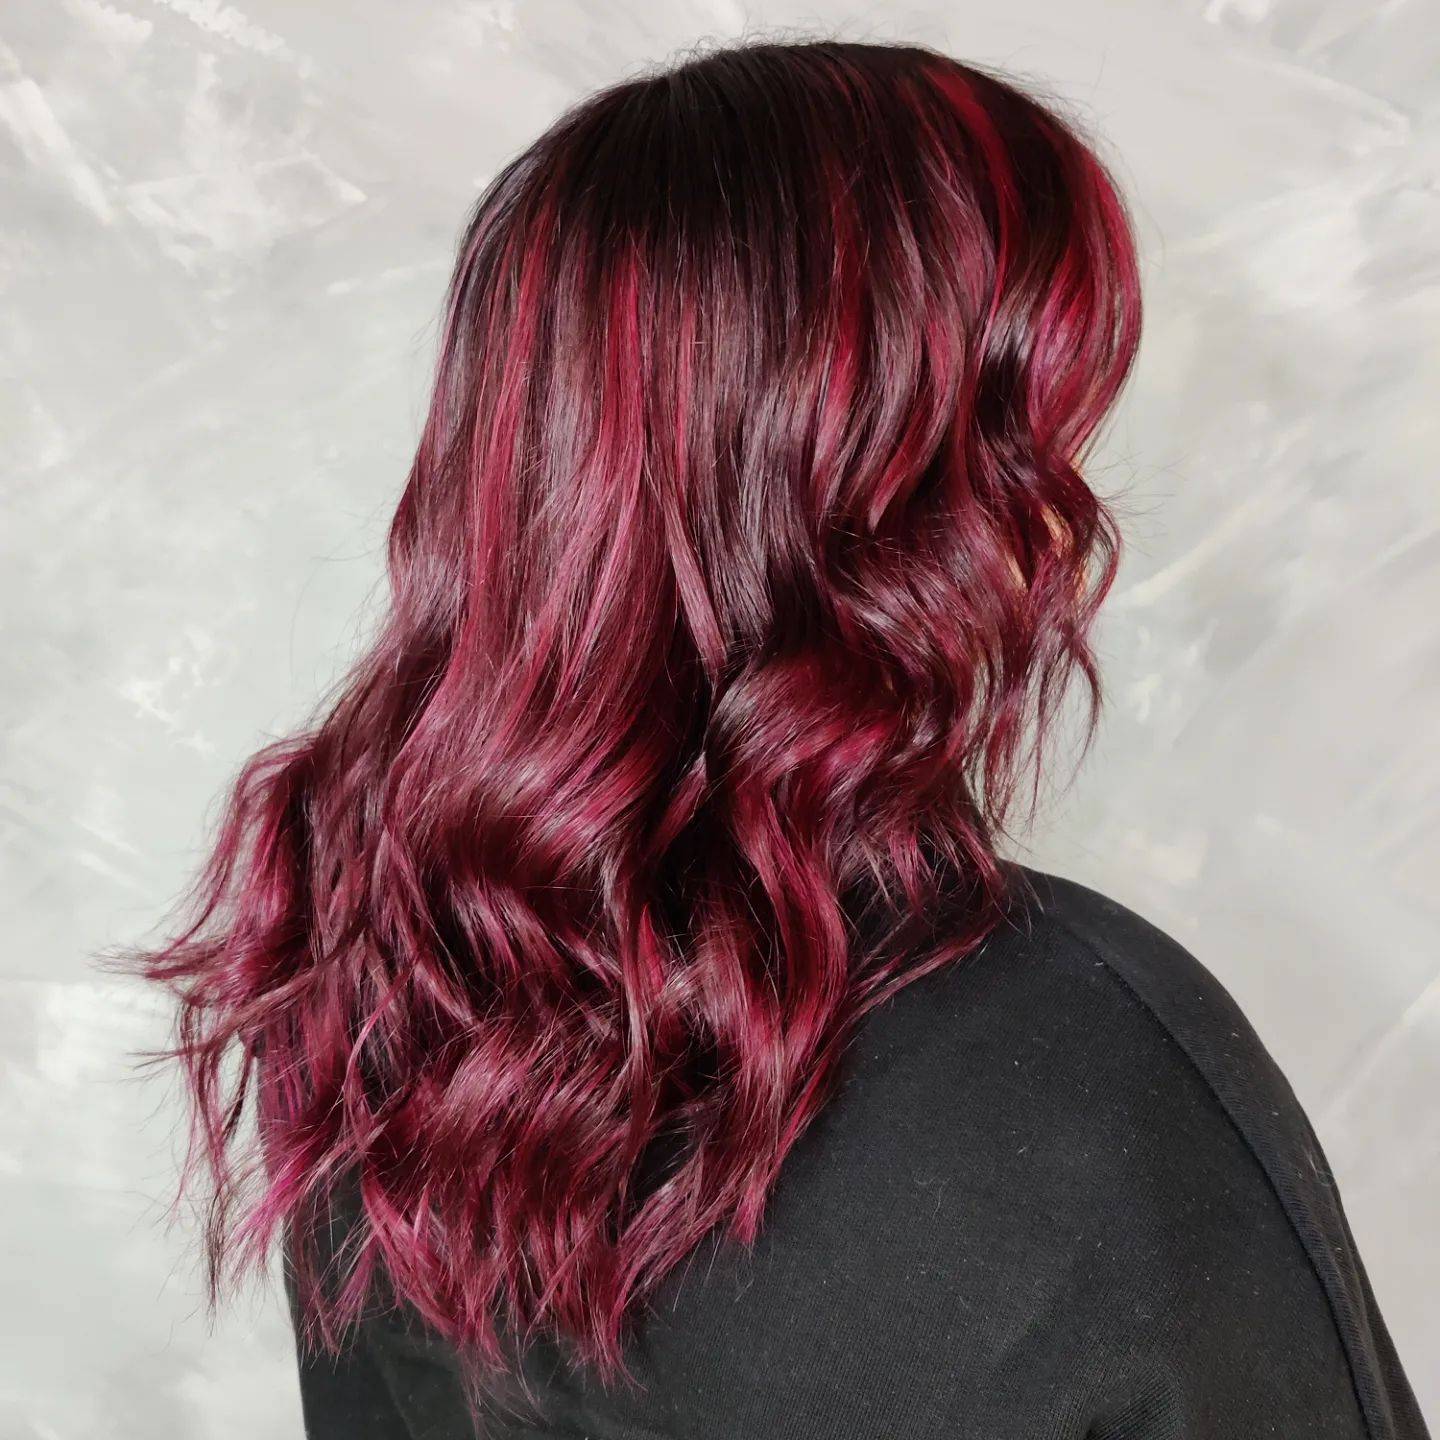 Burgundy hair color 315 burgundy hair color | burgundy hair color for women | burgundy hair color highlights Burgundy Hair Color